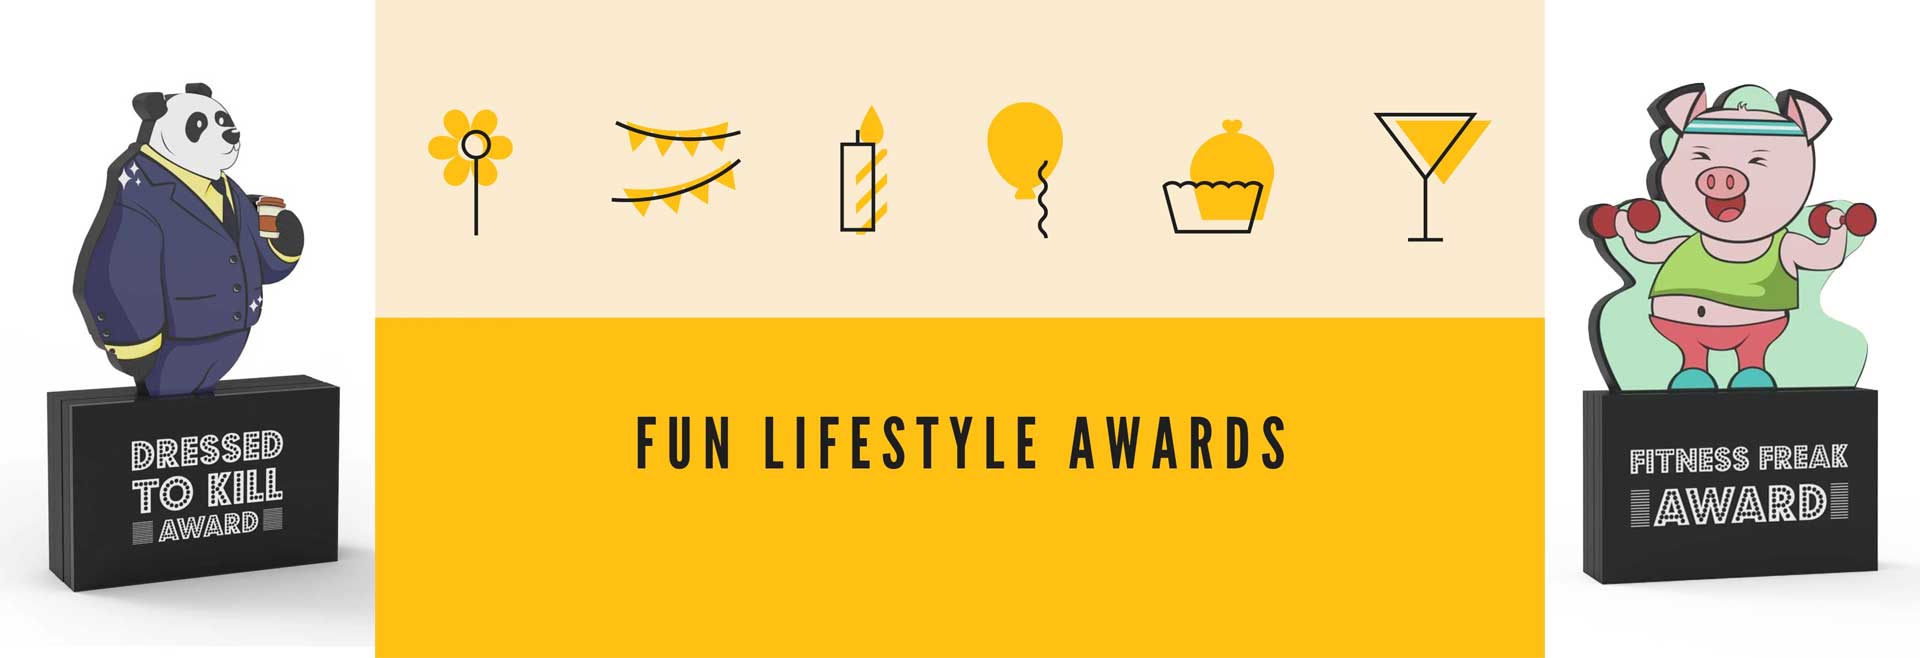 Fun Lifestyle Awards